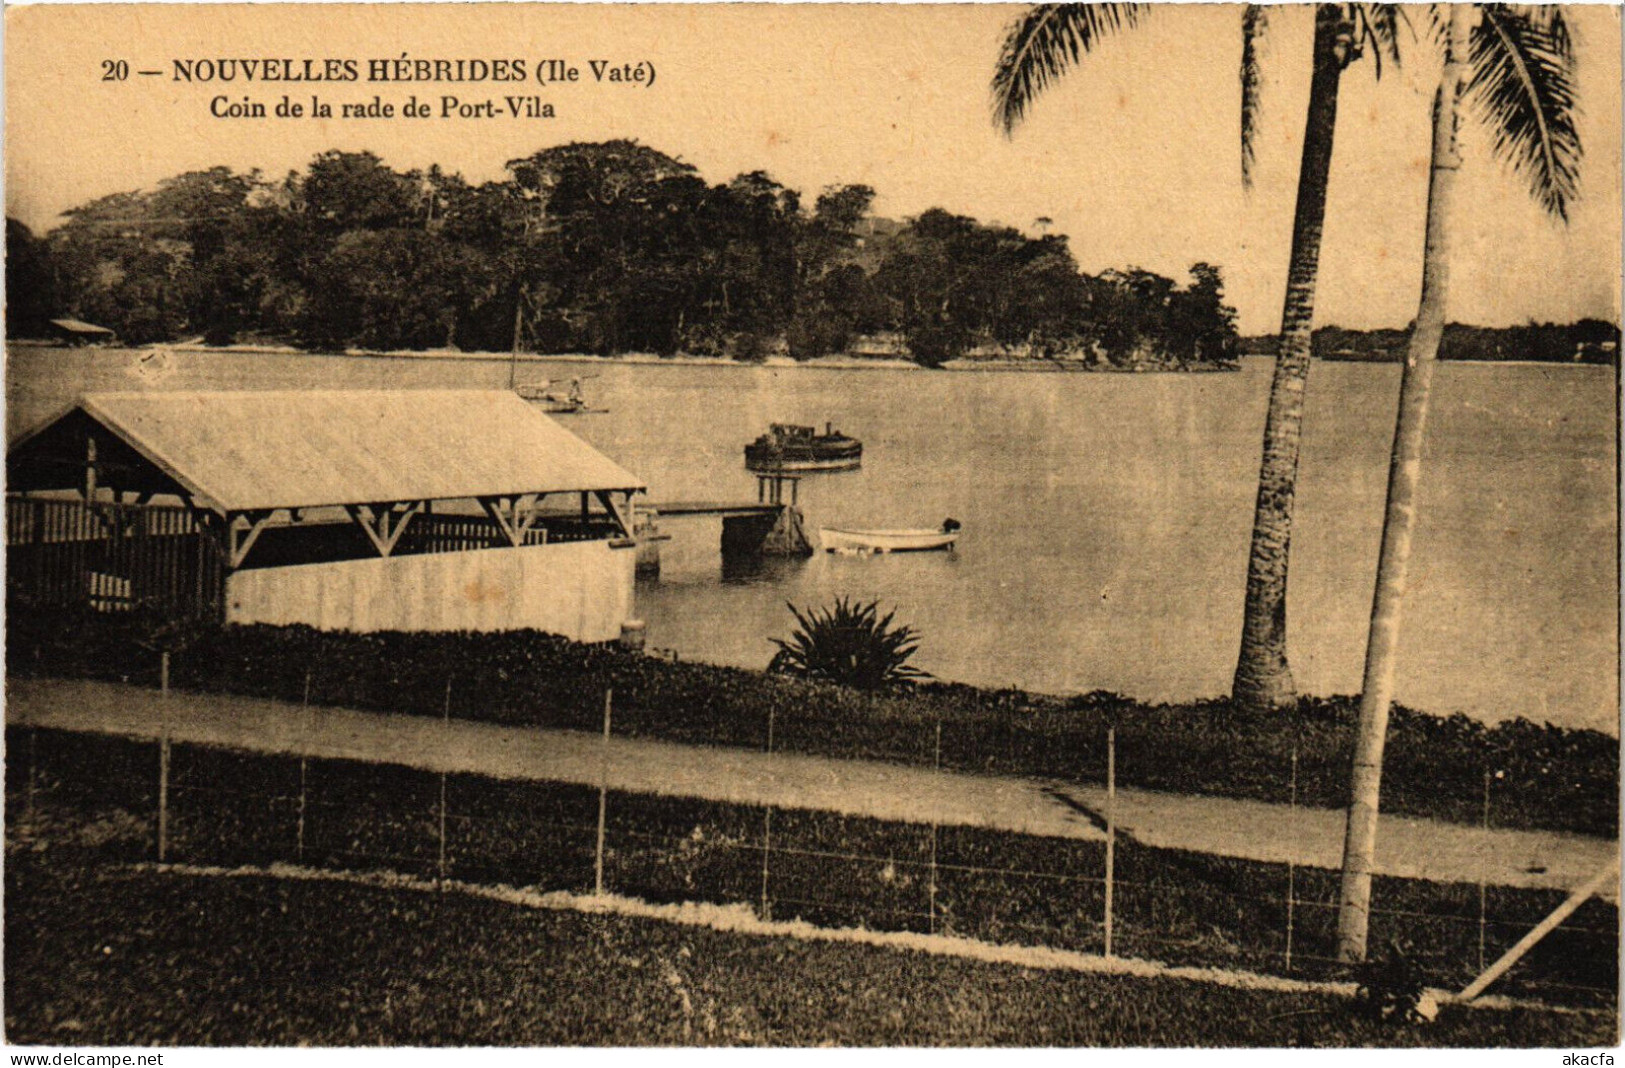 PC NEW HEBRIDES, COIN DE LA RADE DE PORT VILA, Vintage Postcard (b53547) - Vanuatu